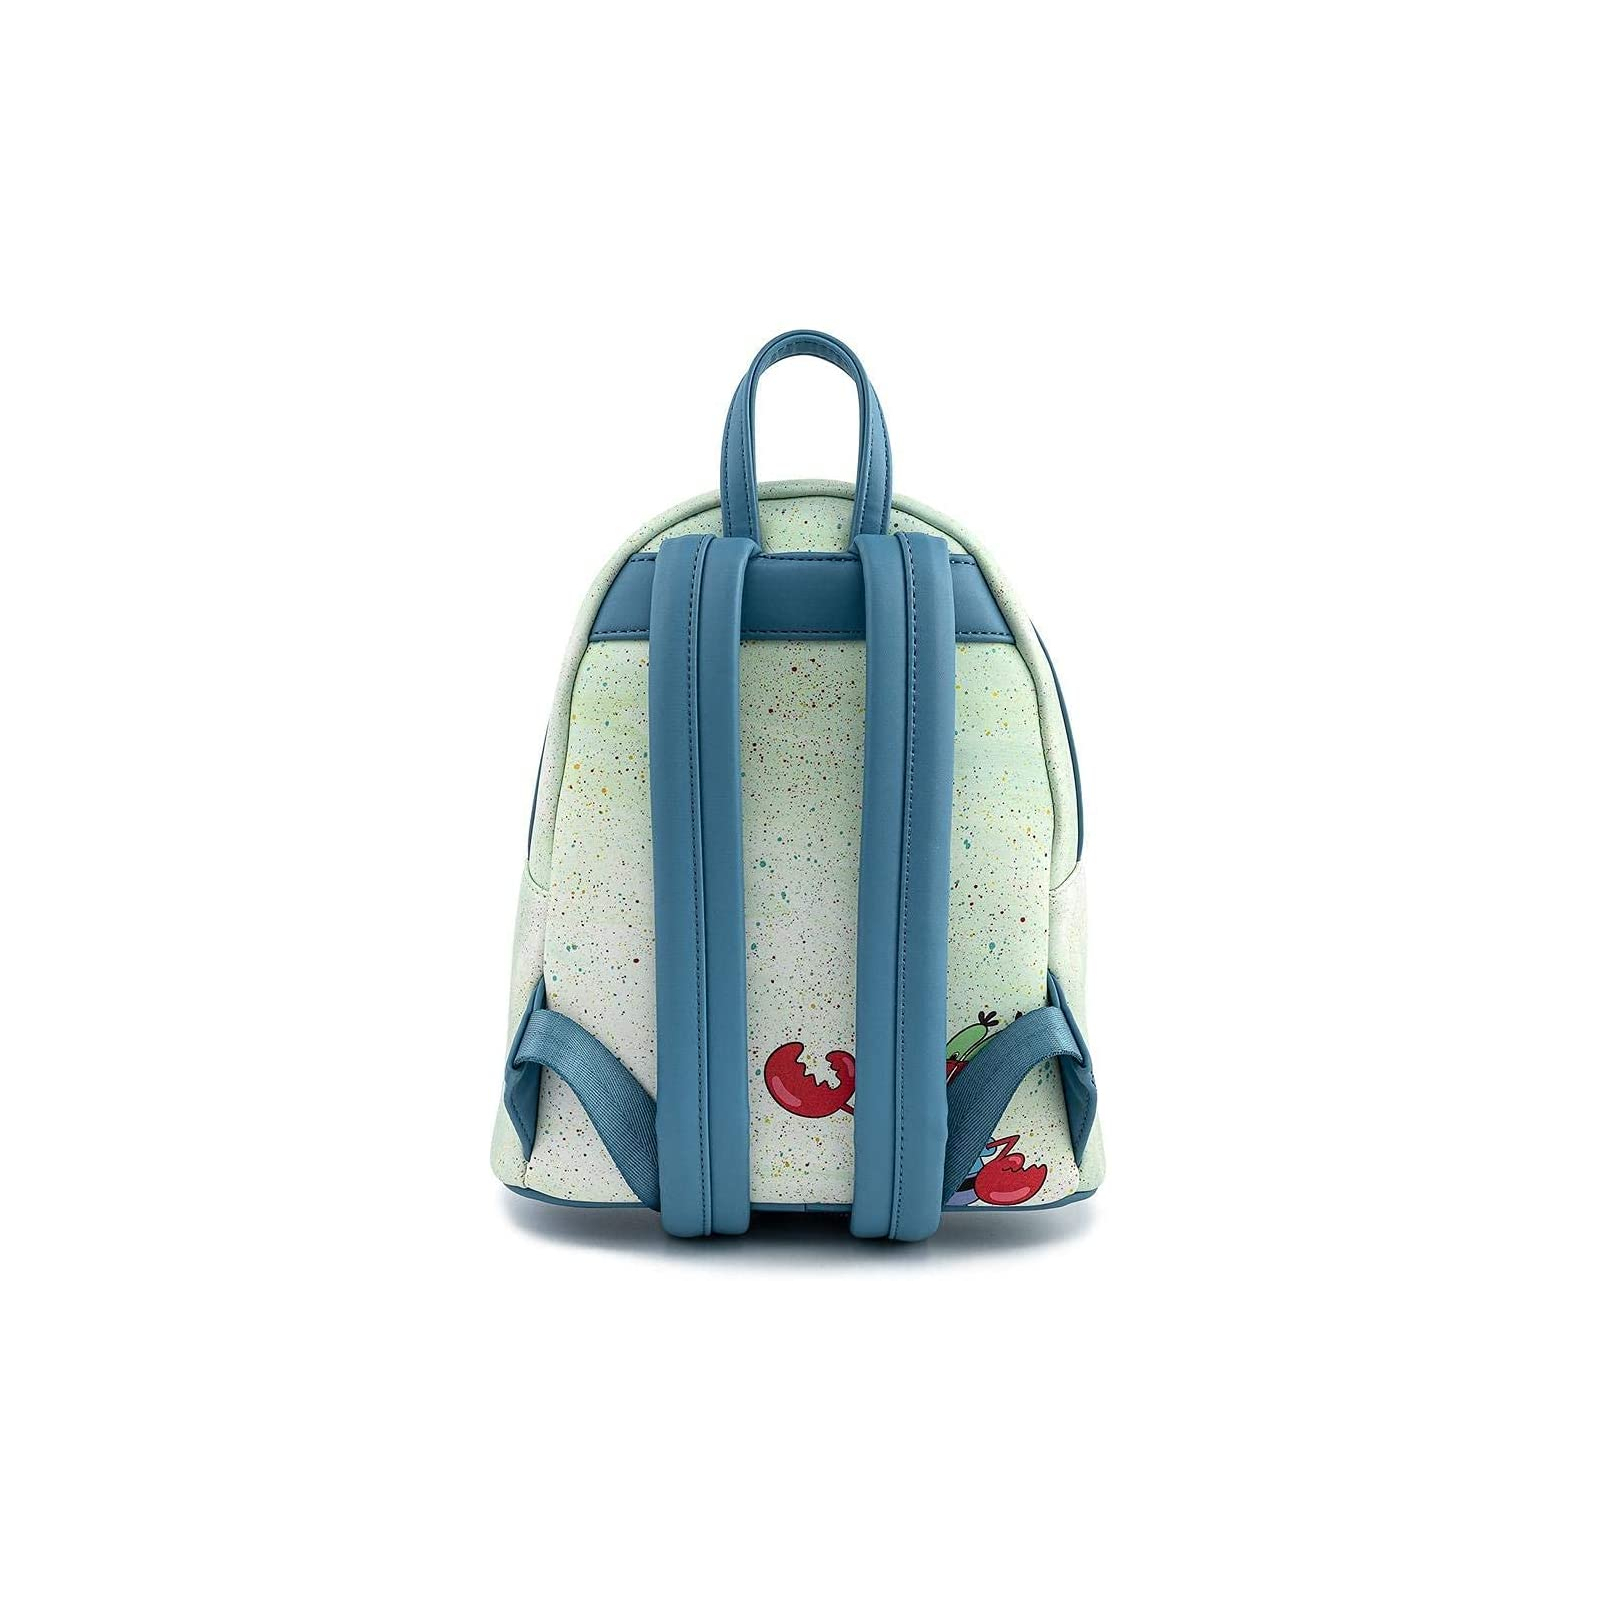 Рюкзак школьный Loungefly Spongebob - Krusty Krab Mini Backpack (NICBK0027) изображение 2